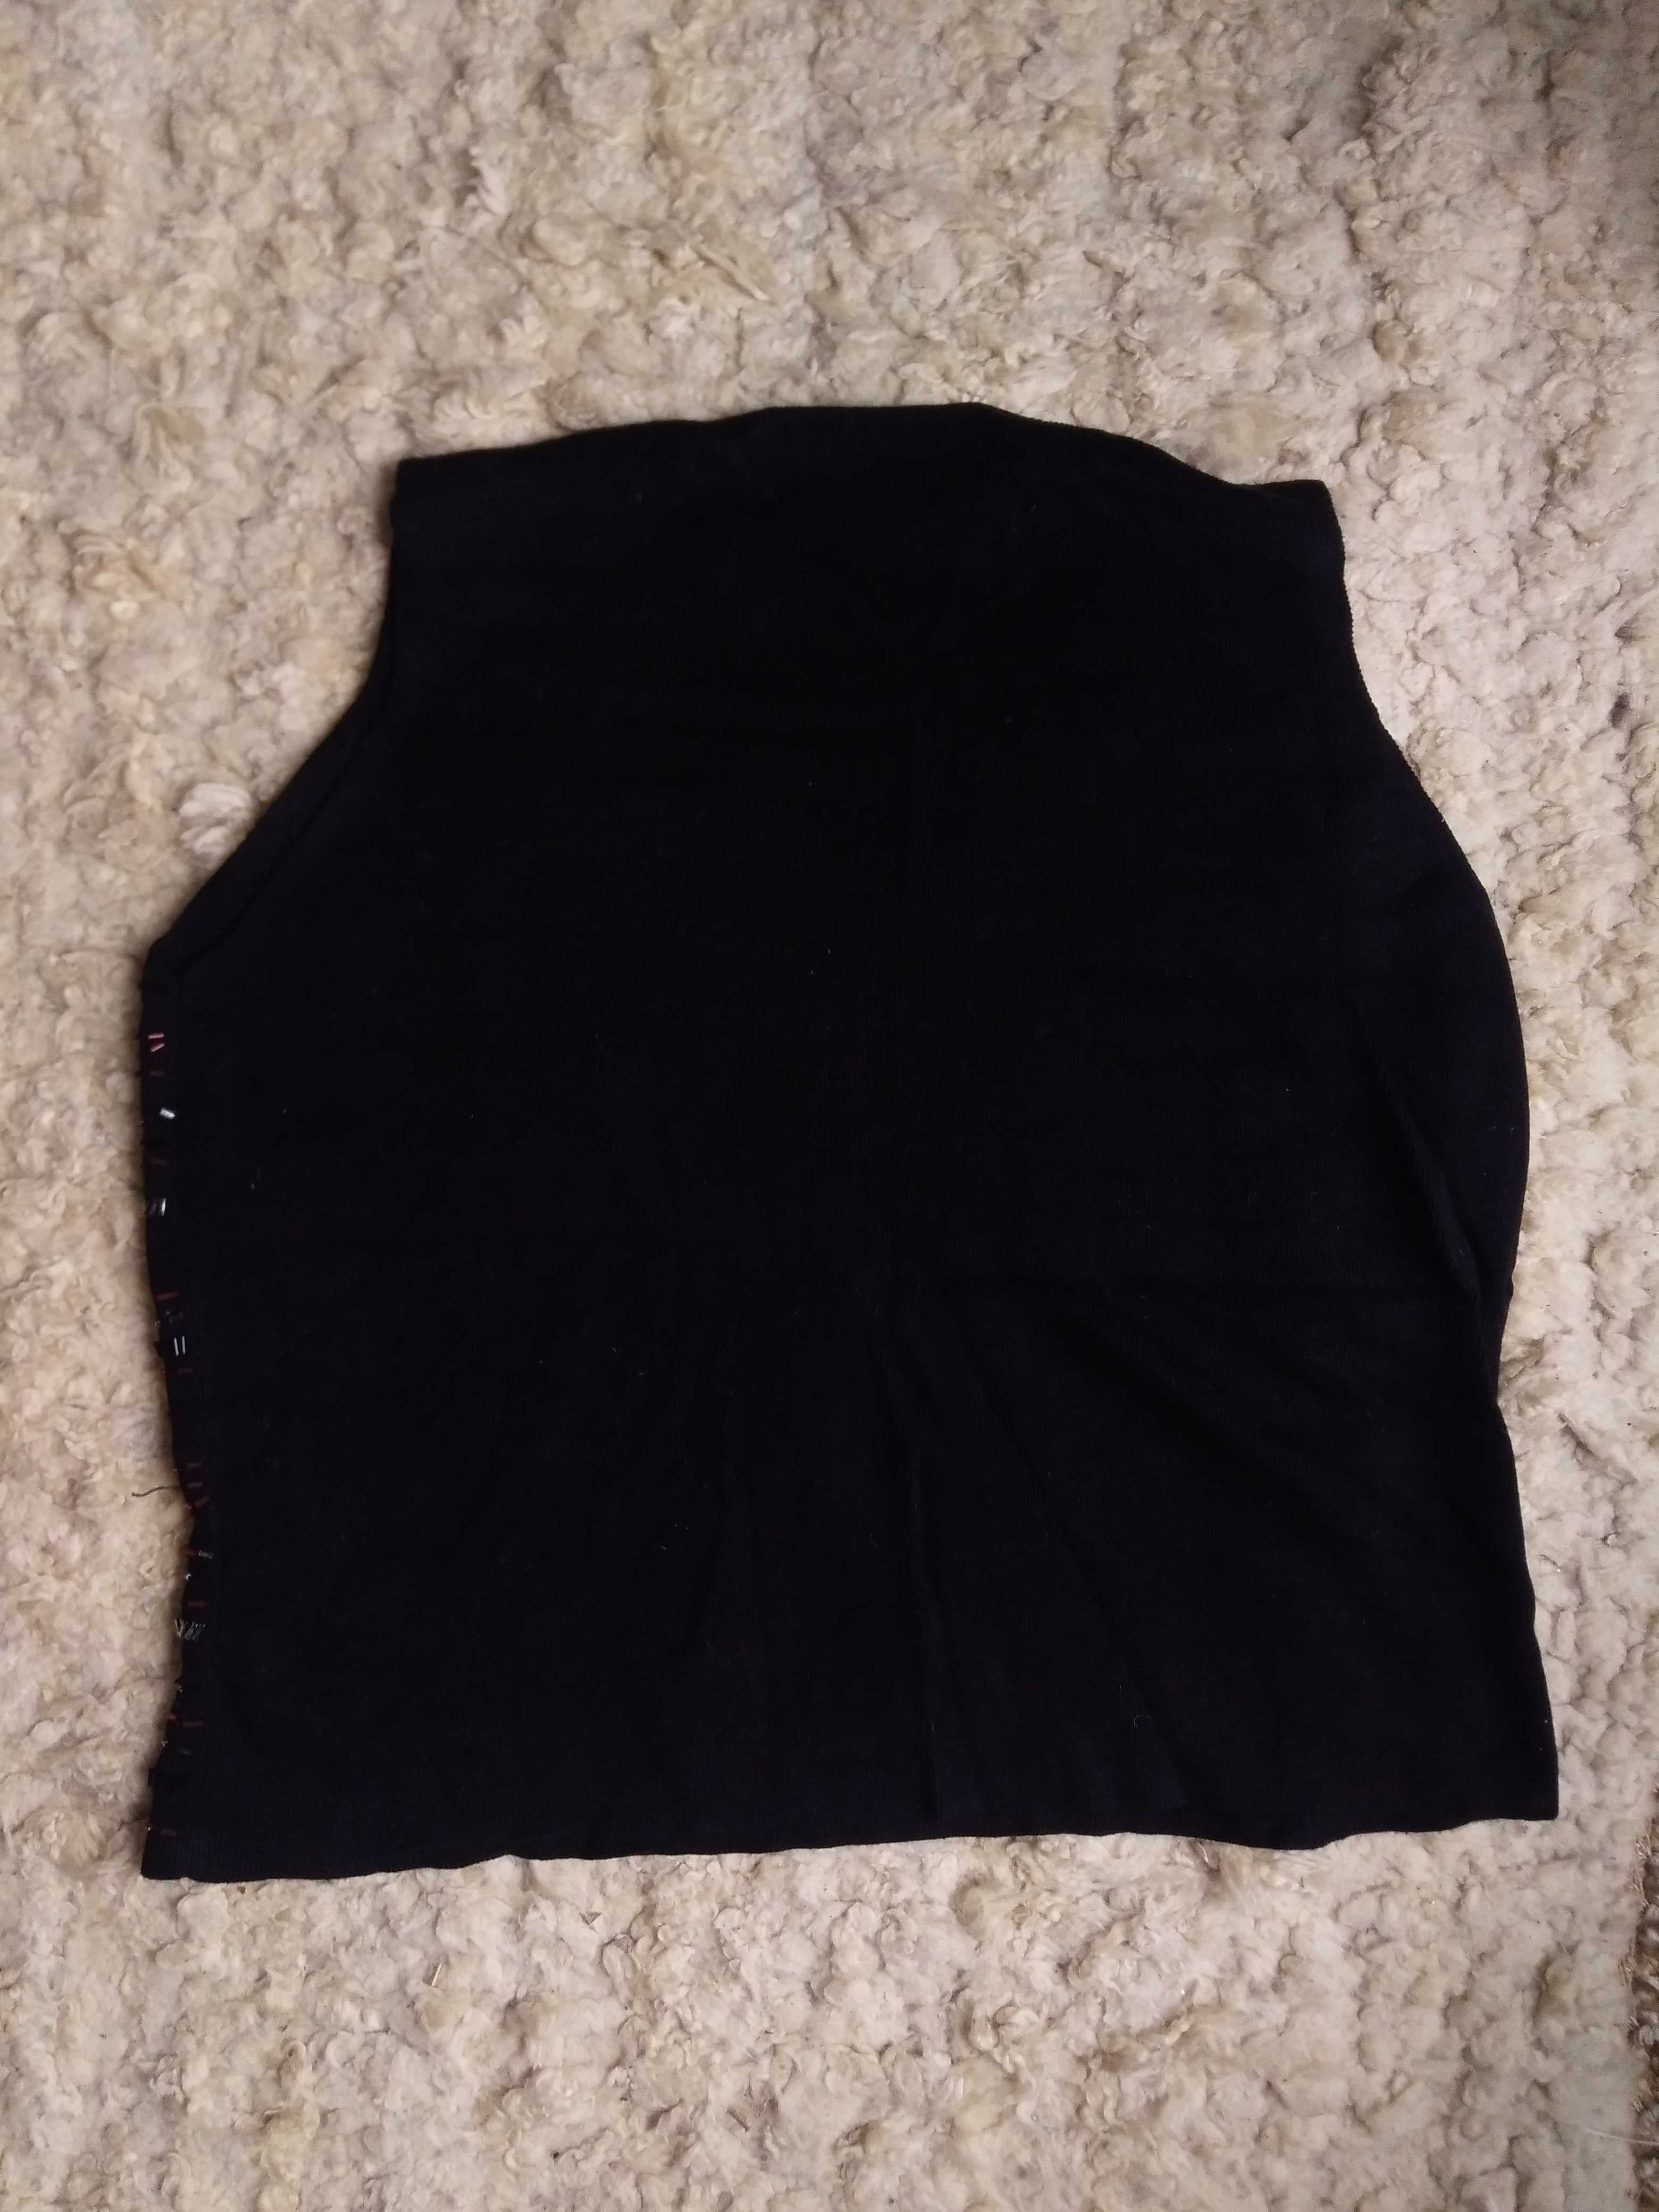 Zestaw odzież damskiej rozmiar L 44-46 bluzki spódnica